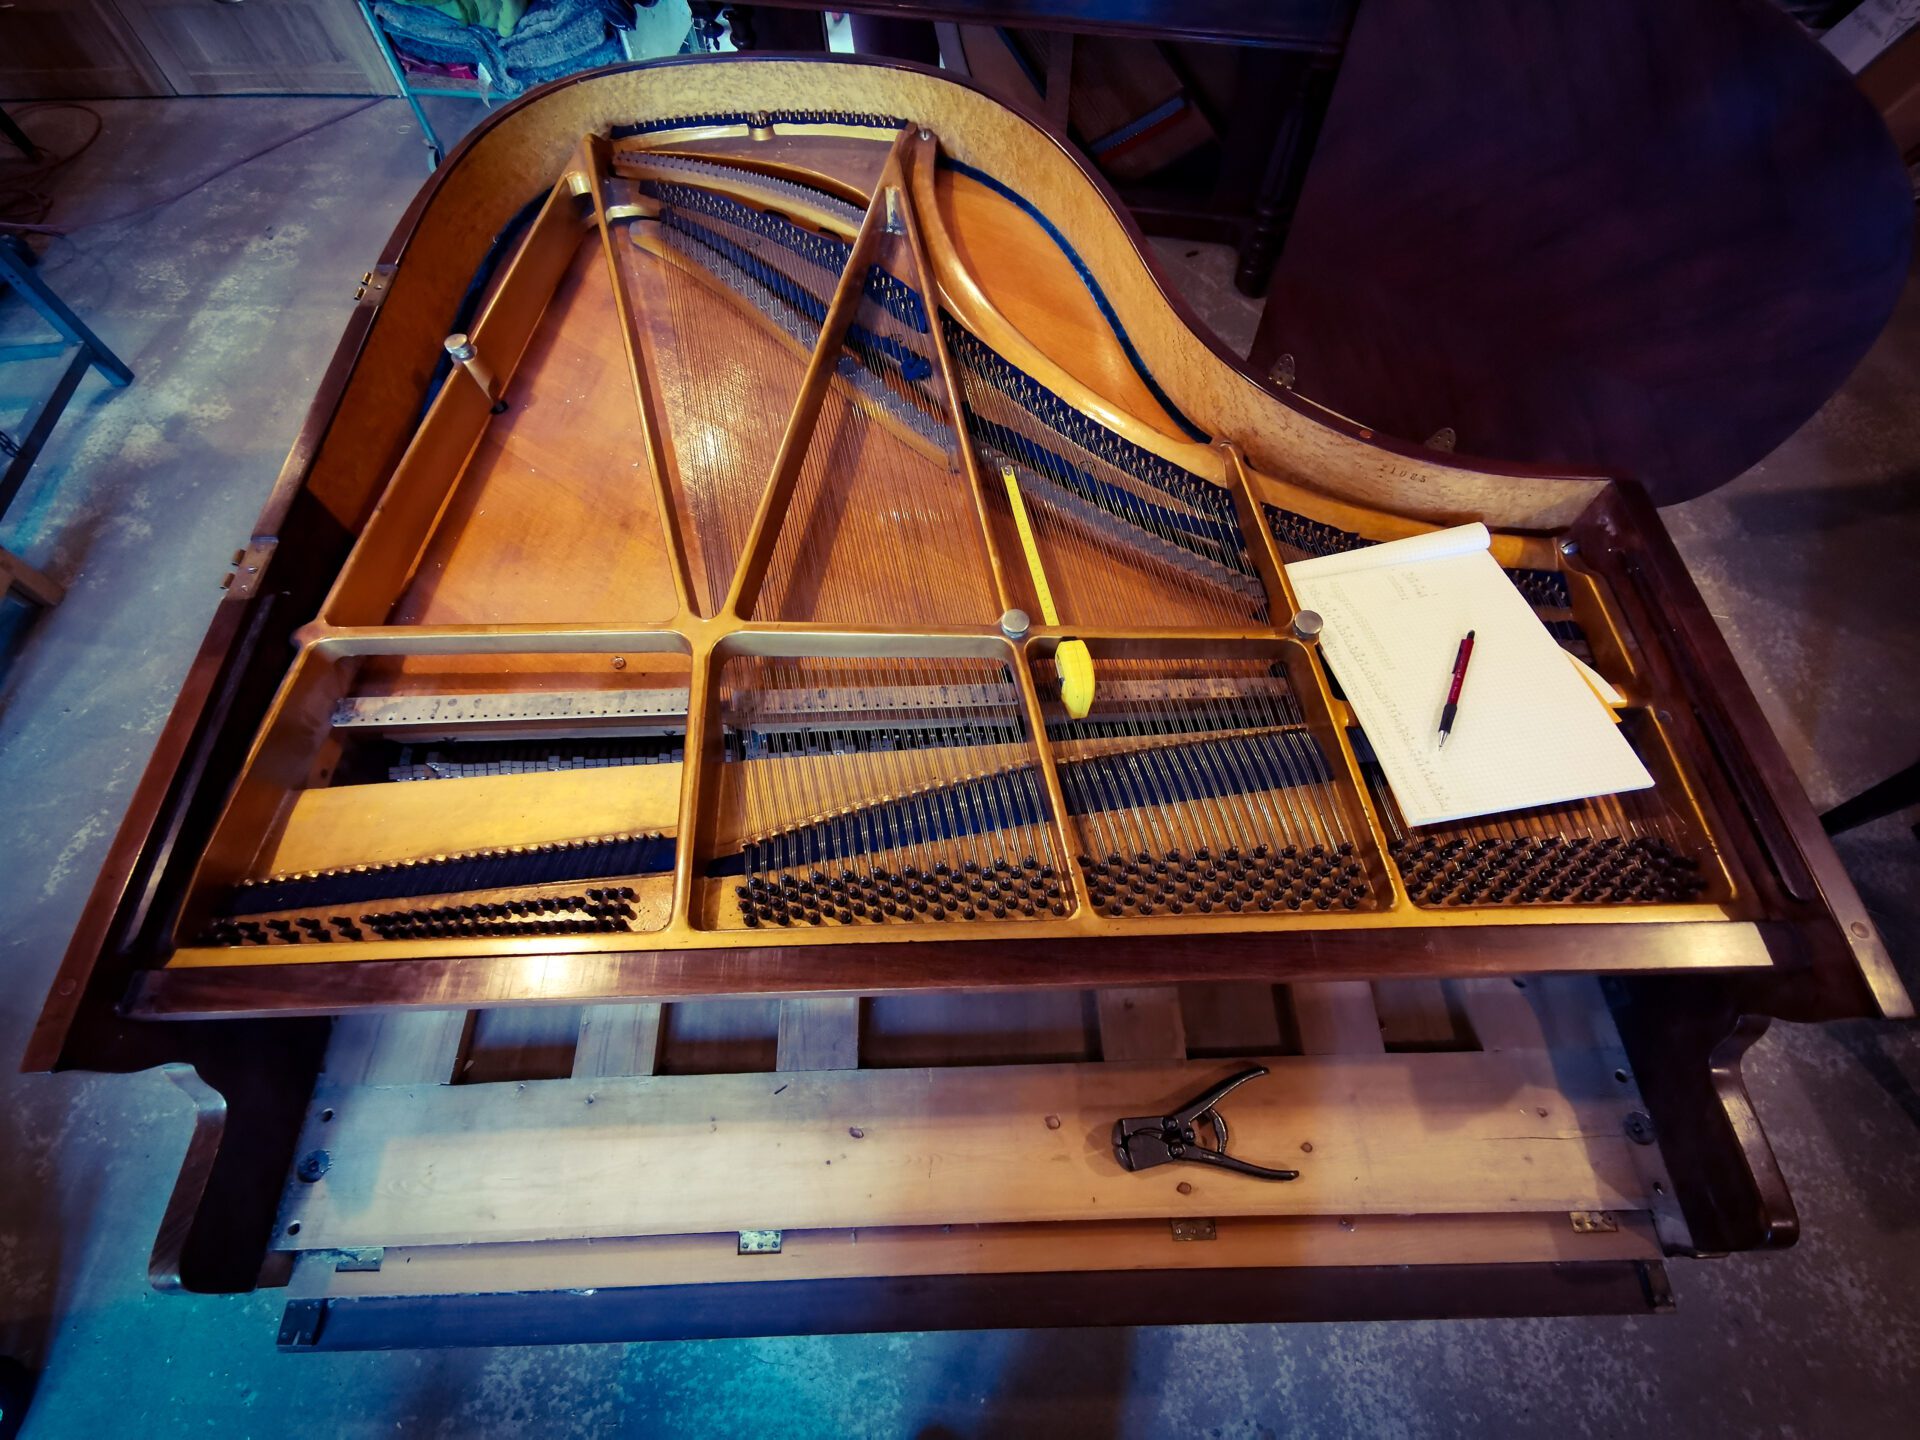 restauration piano quart de queue Kriegelstein "Bijou" de 1914 dans l'atelier de restauration de piano de Marion Lainé en Savoie